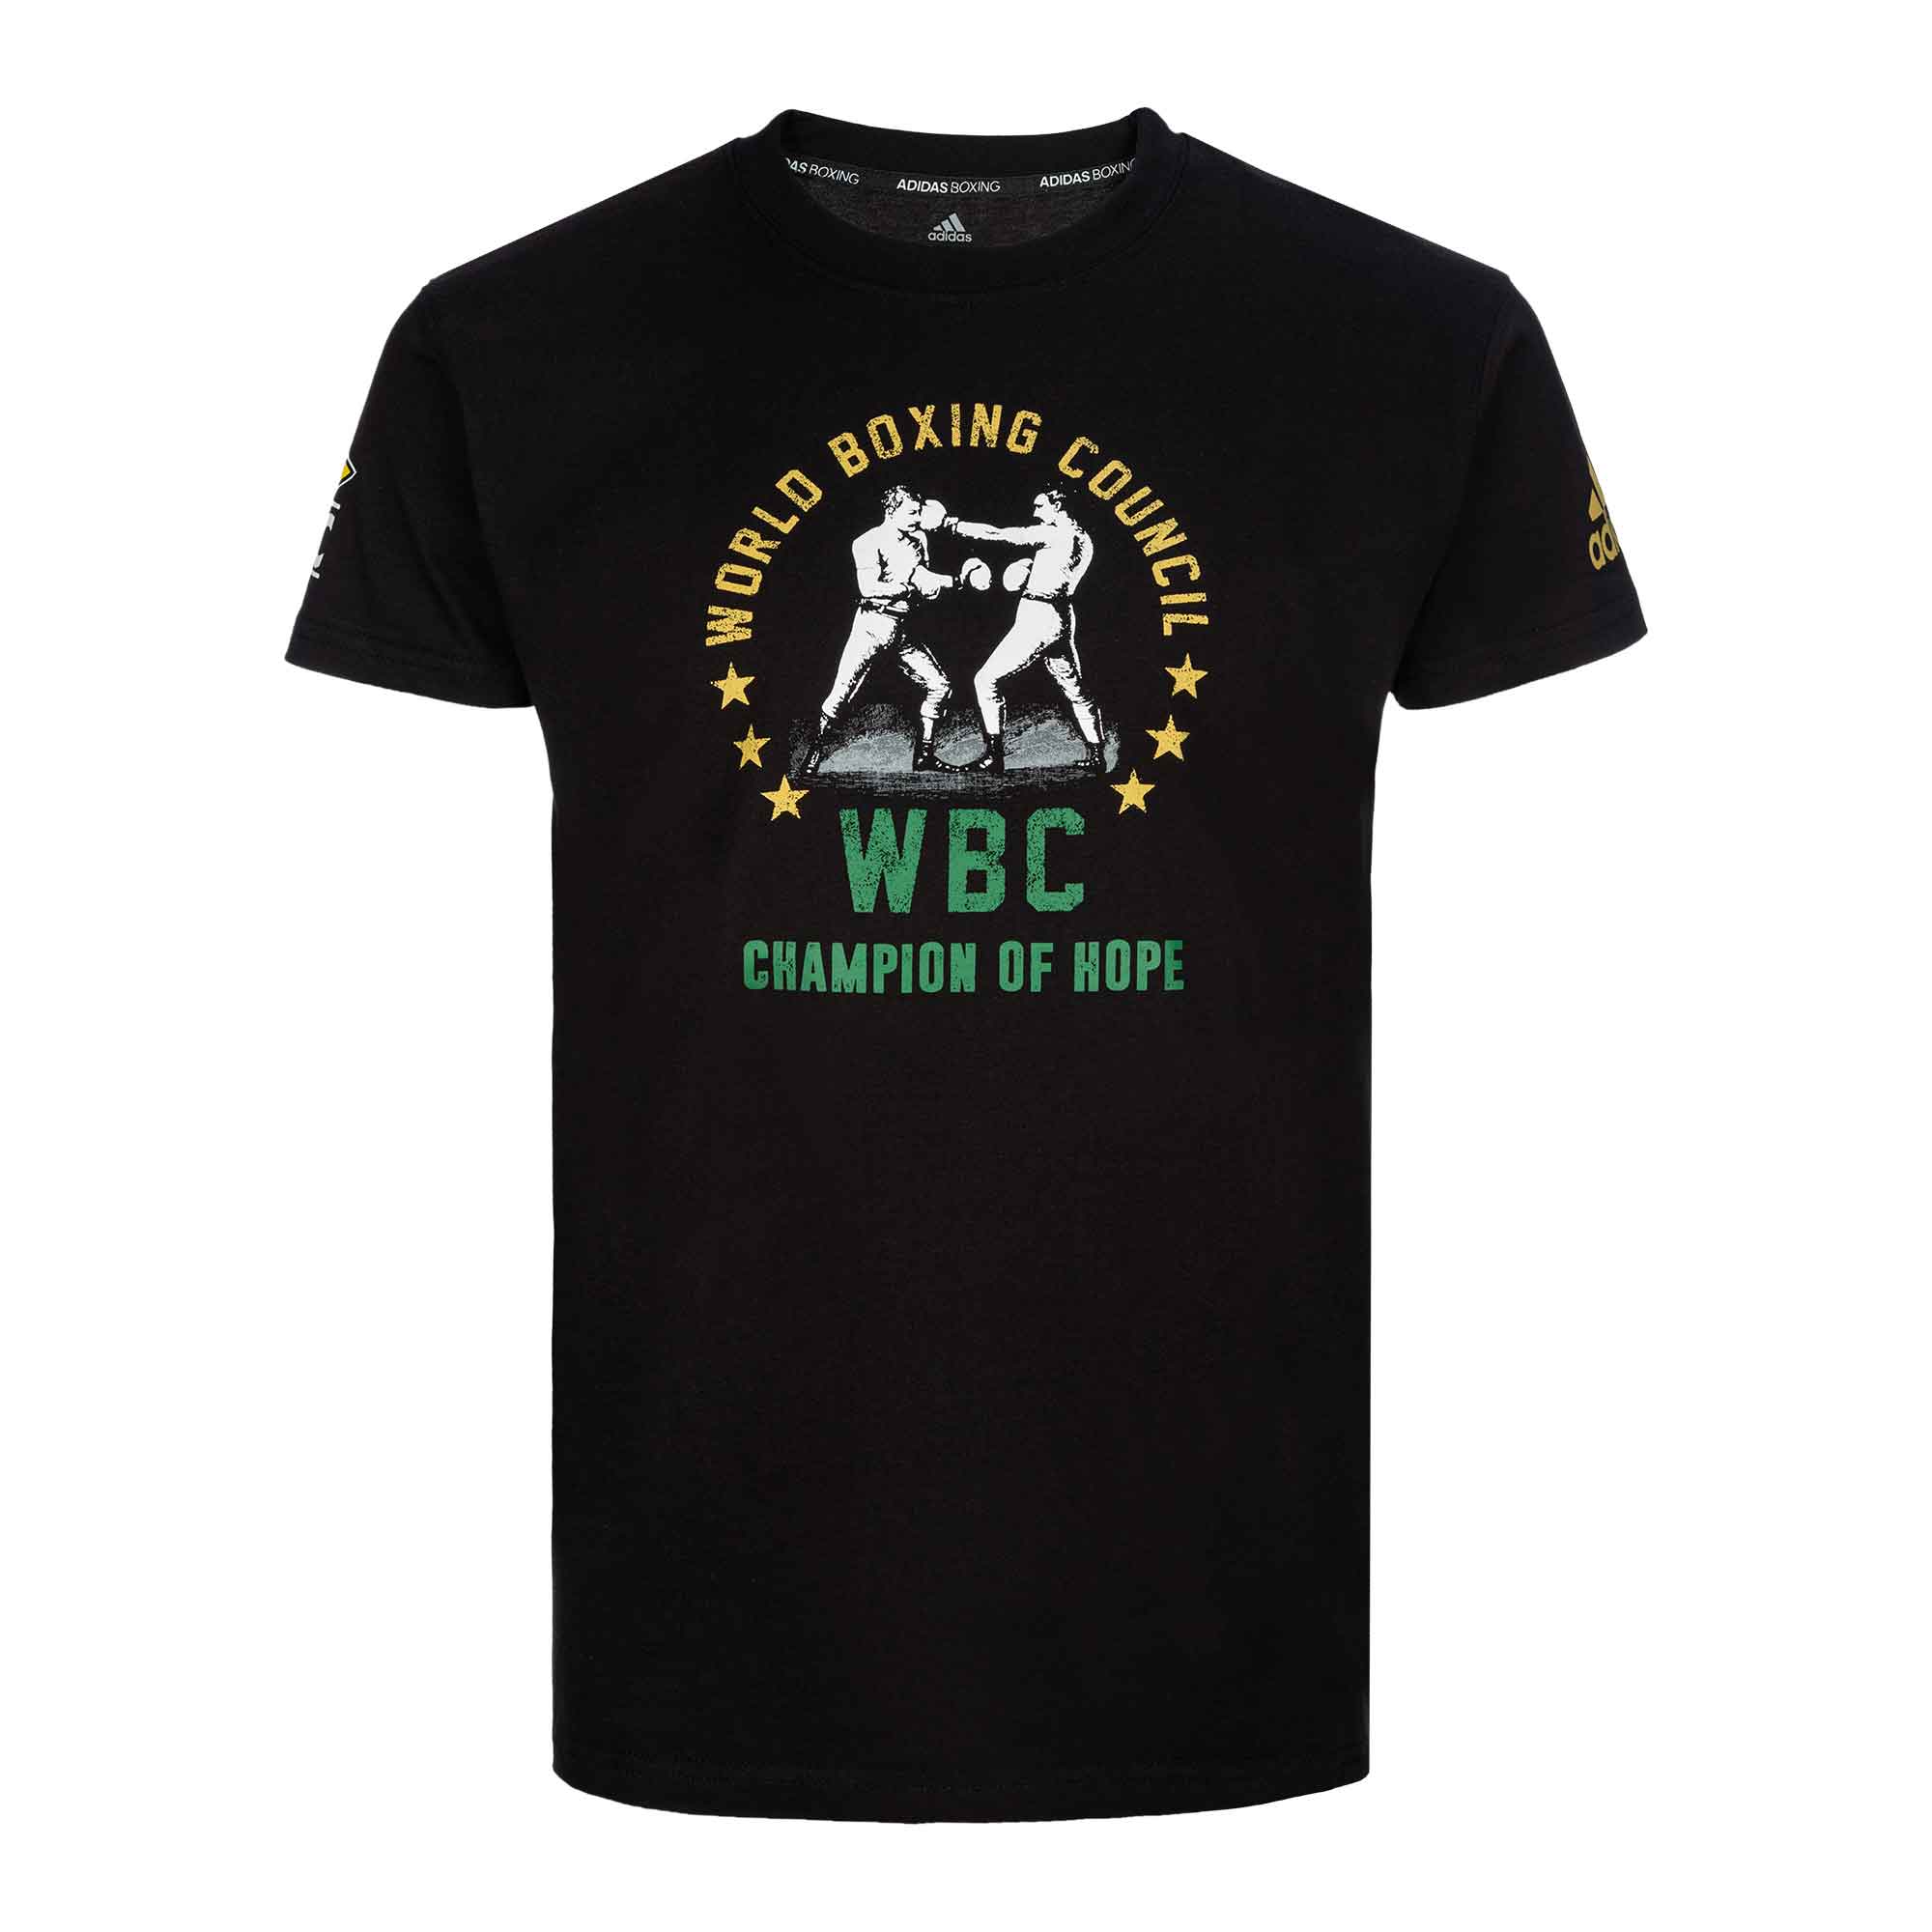 Футболка World Boxing Council WBC Champion of Hope черная (размер S)